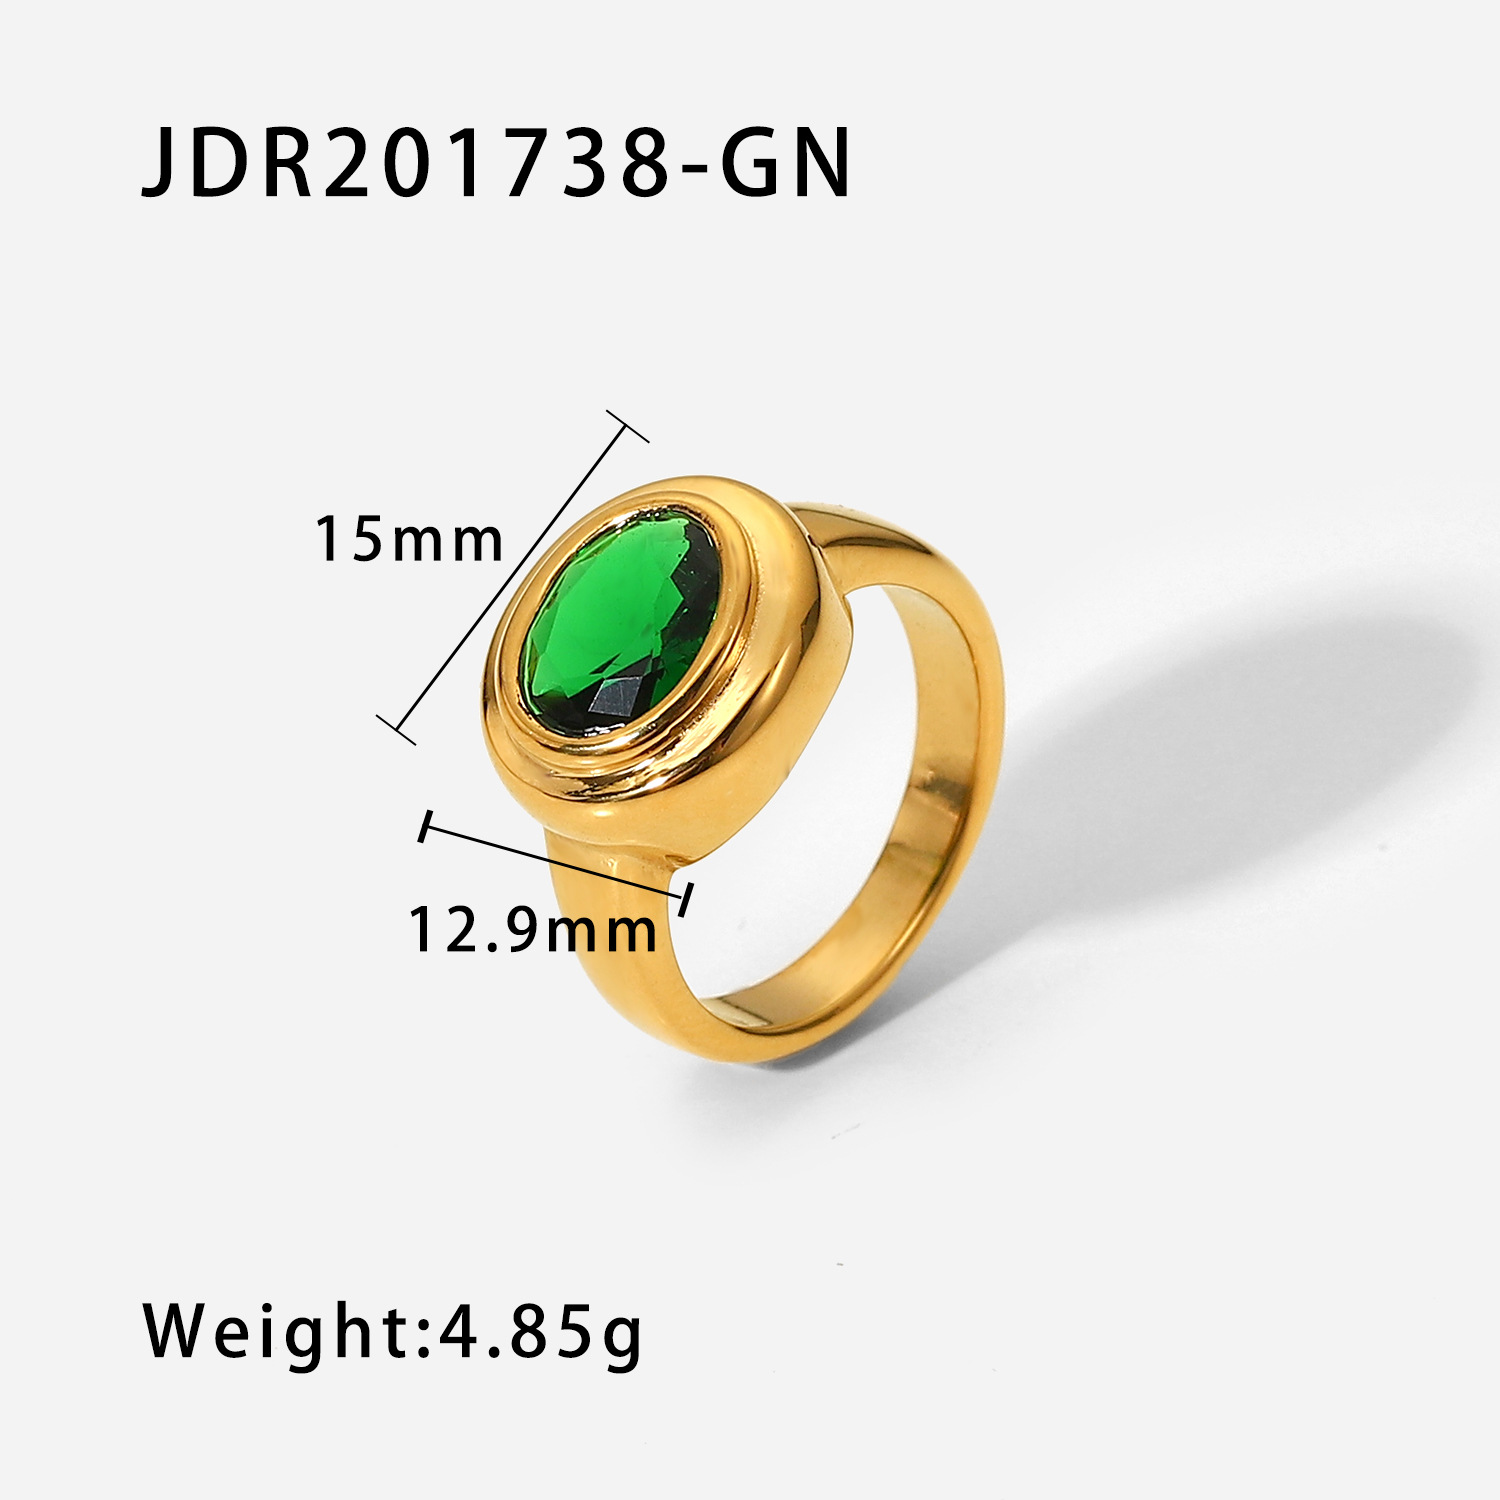 JDR201738-GN